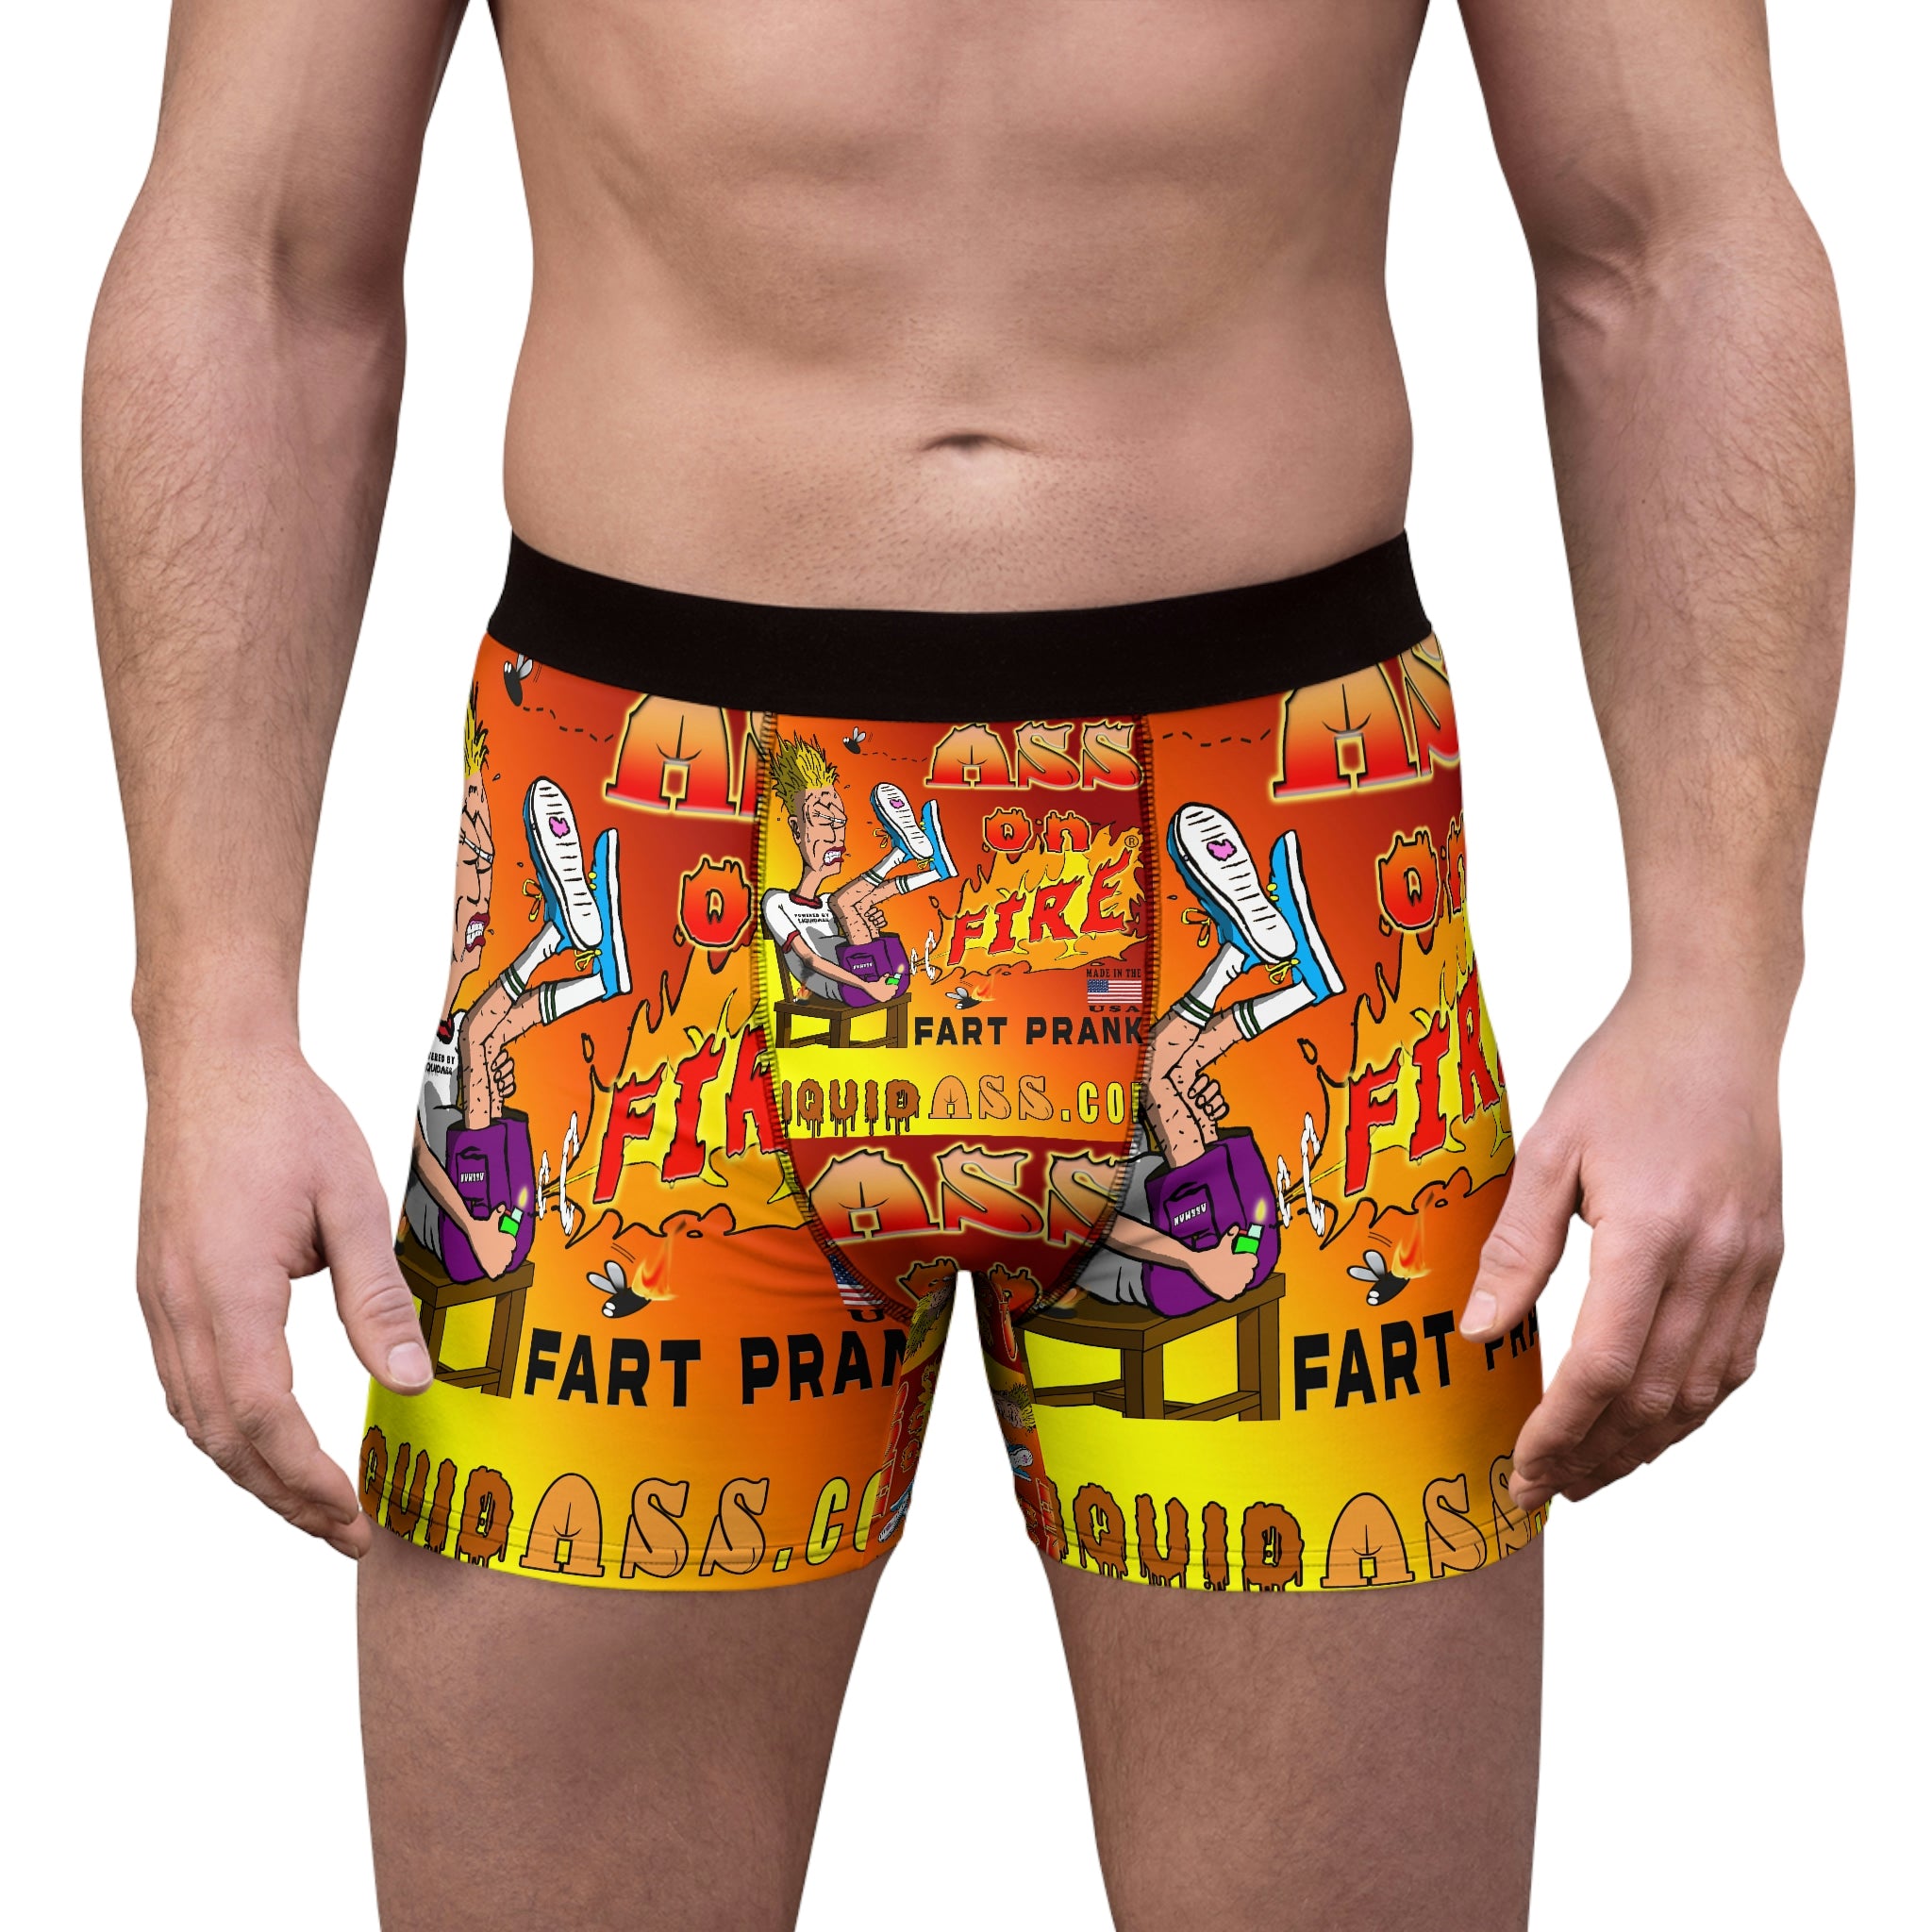 Ass on Fire - Men's Boxer Briefs – Liquid ASS - An ASSman approved site!